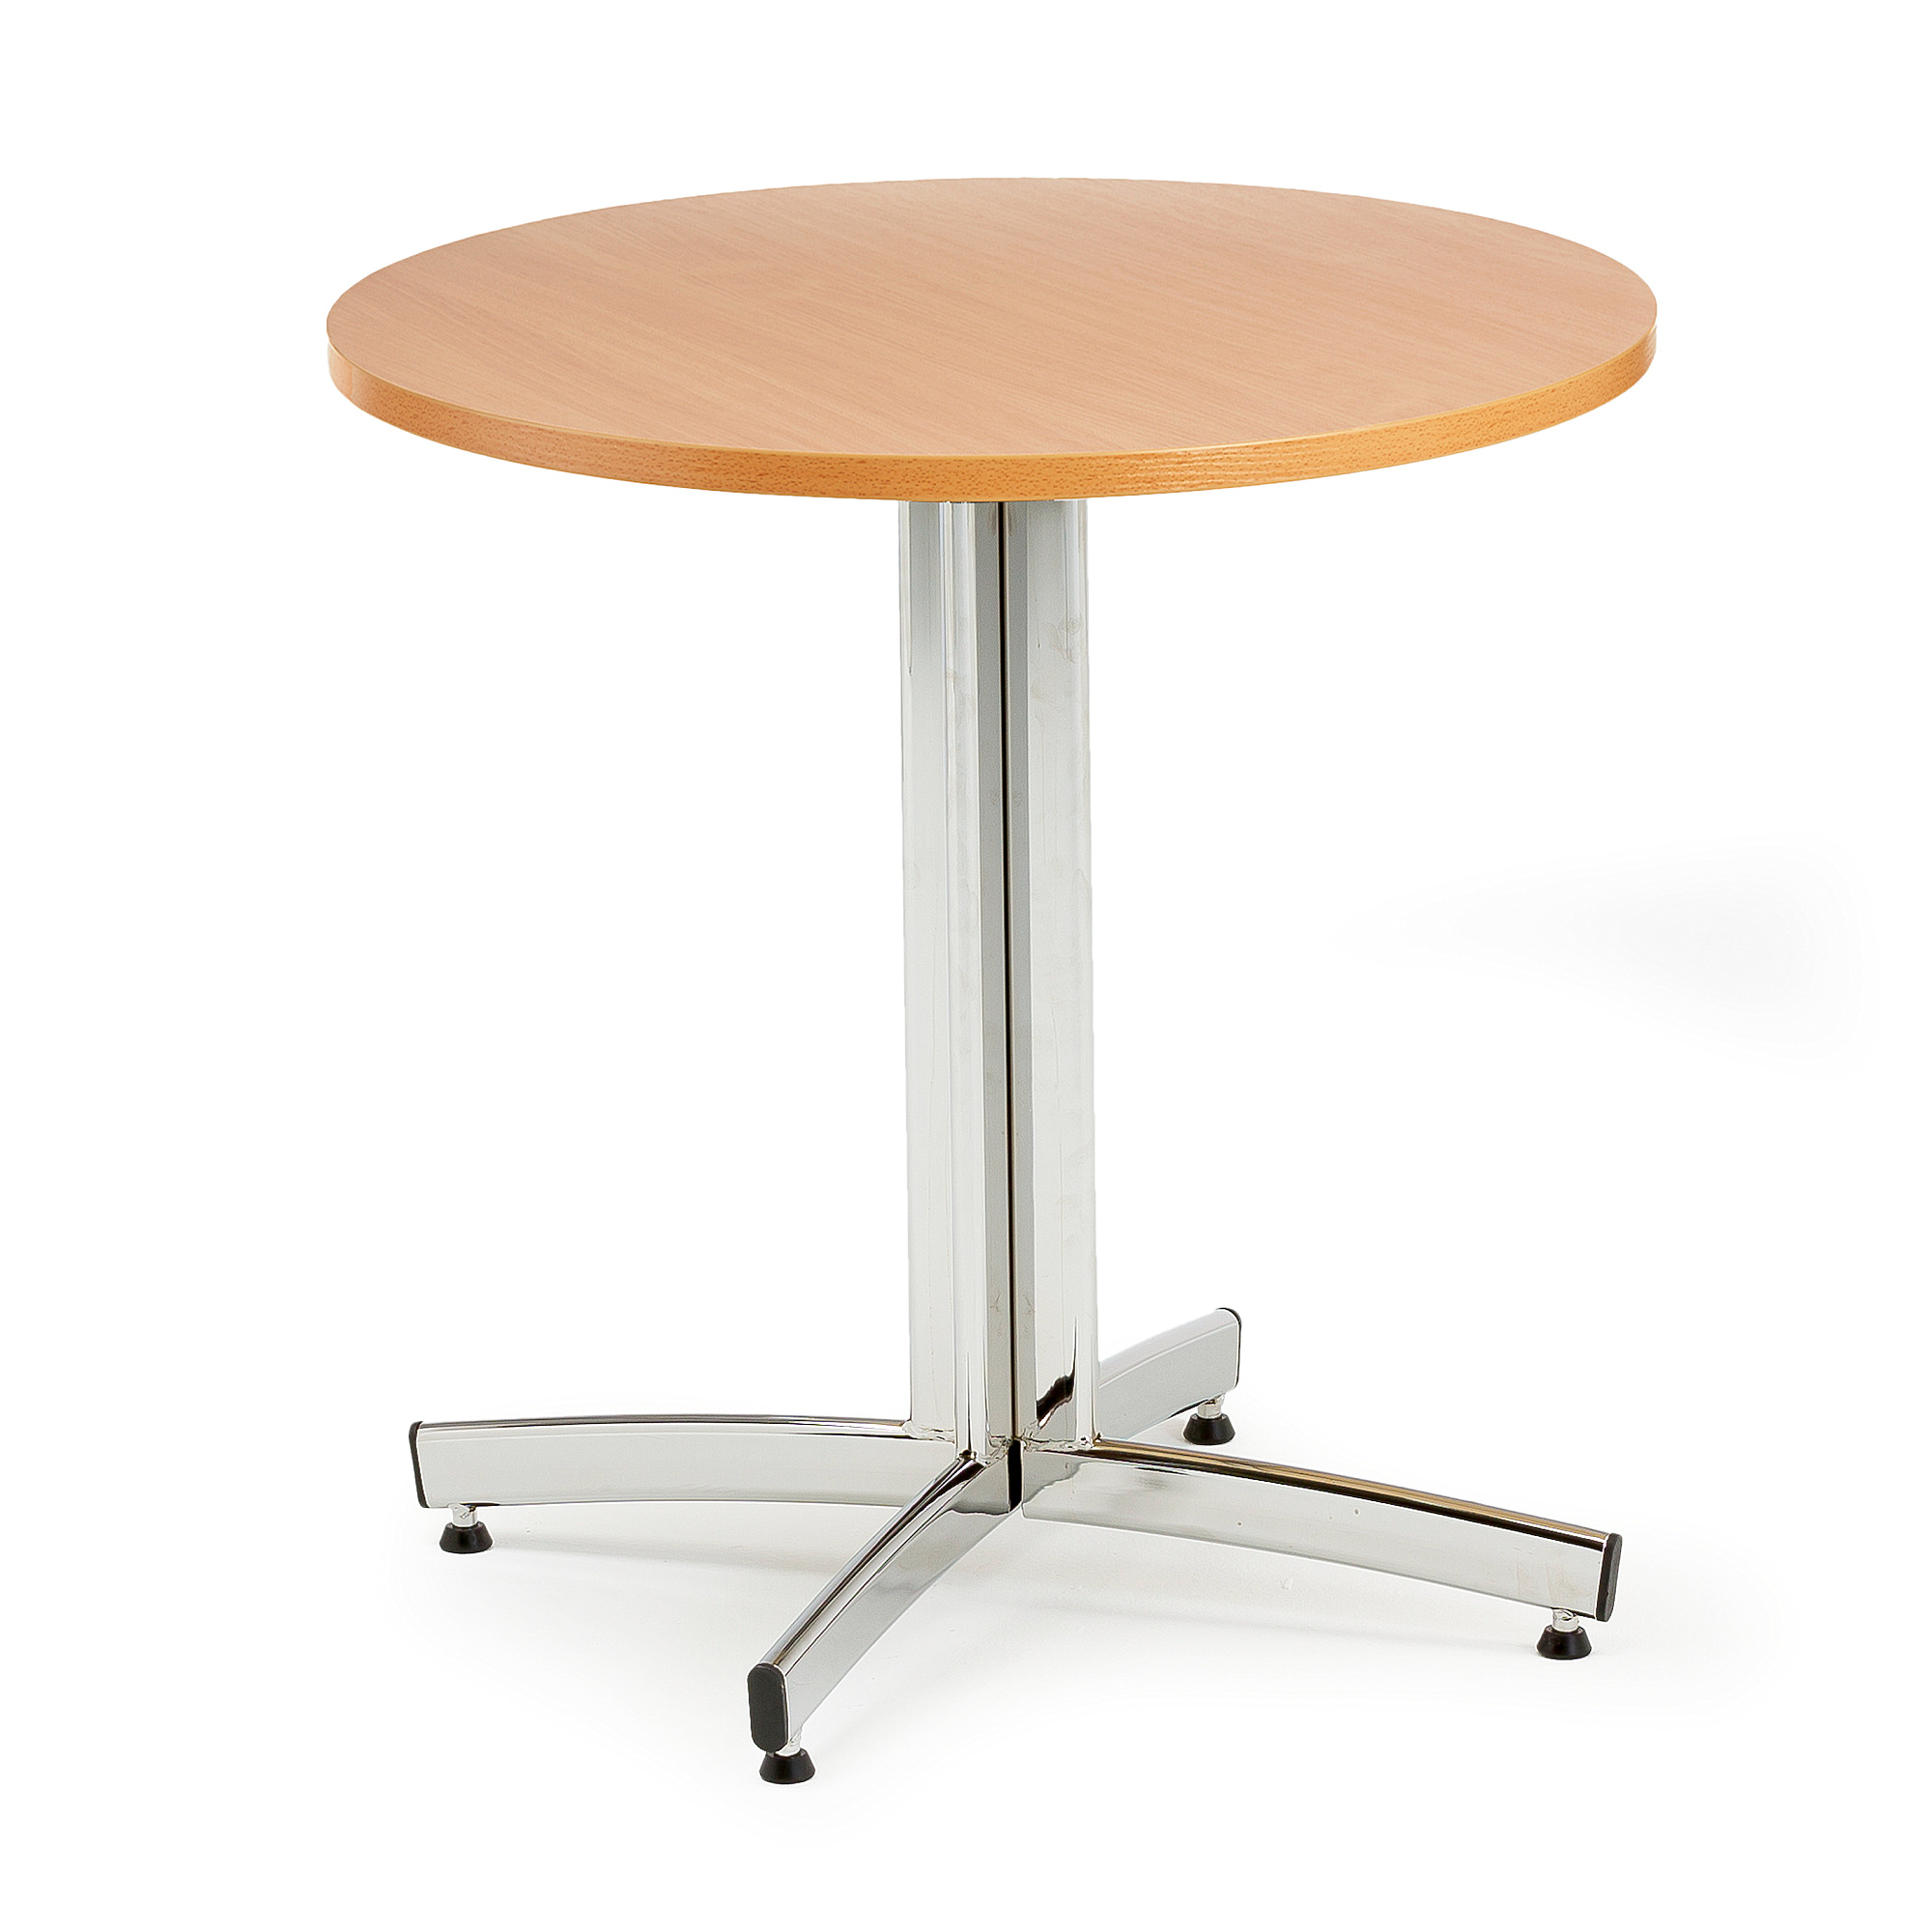 Jedálenský stôl SANNA, okrúhly Ø 700 x V 720 mm, buk / chróm